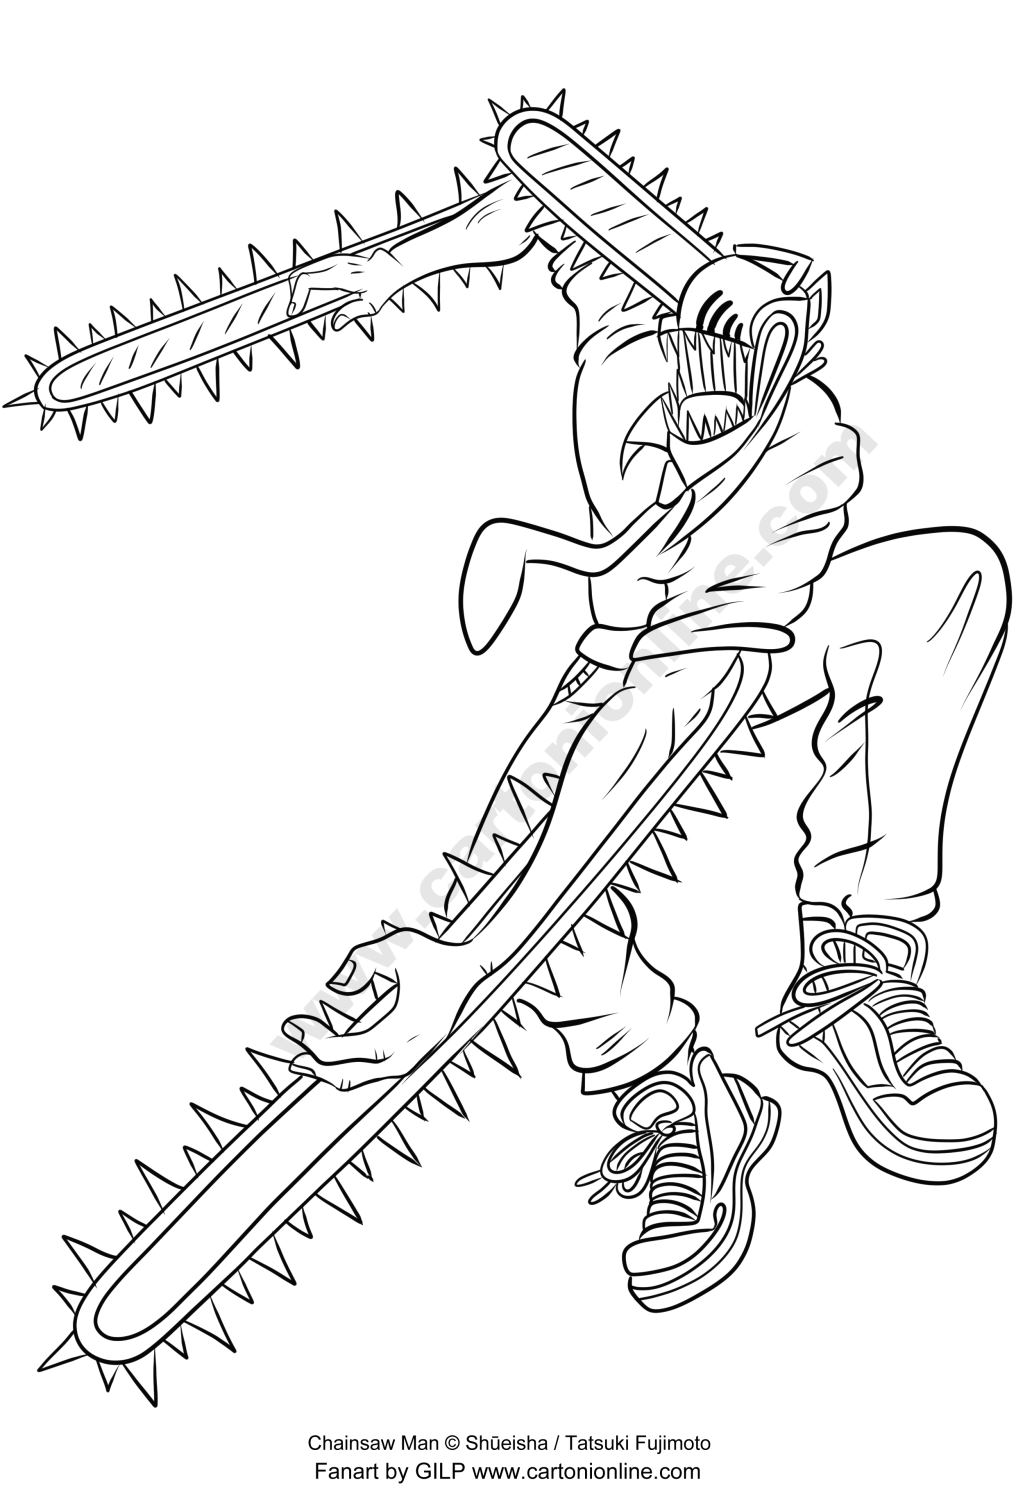 Disegno di Chainsaw Man di Chainsaw Man da stampare e colorare